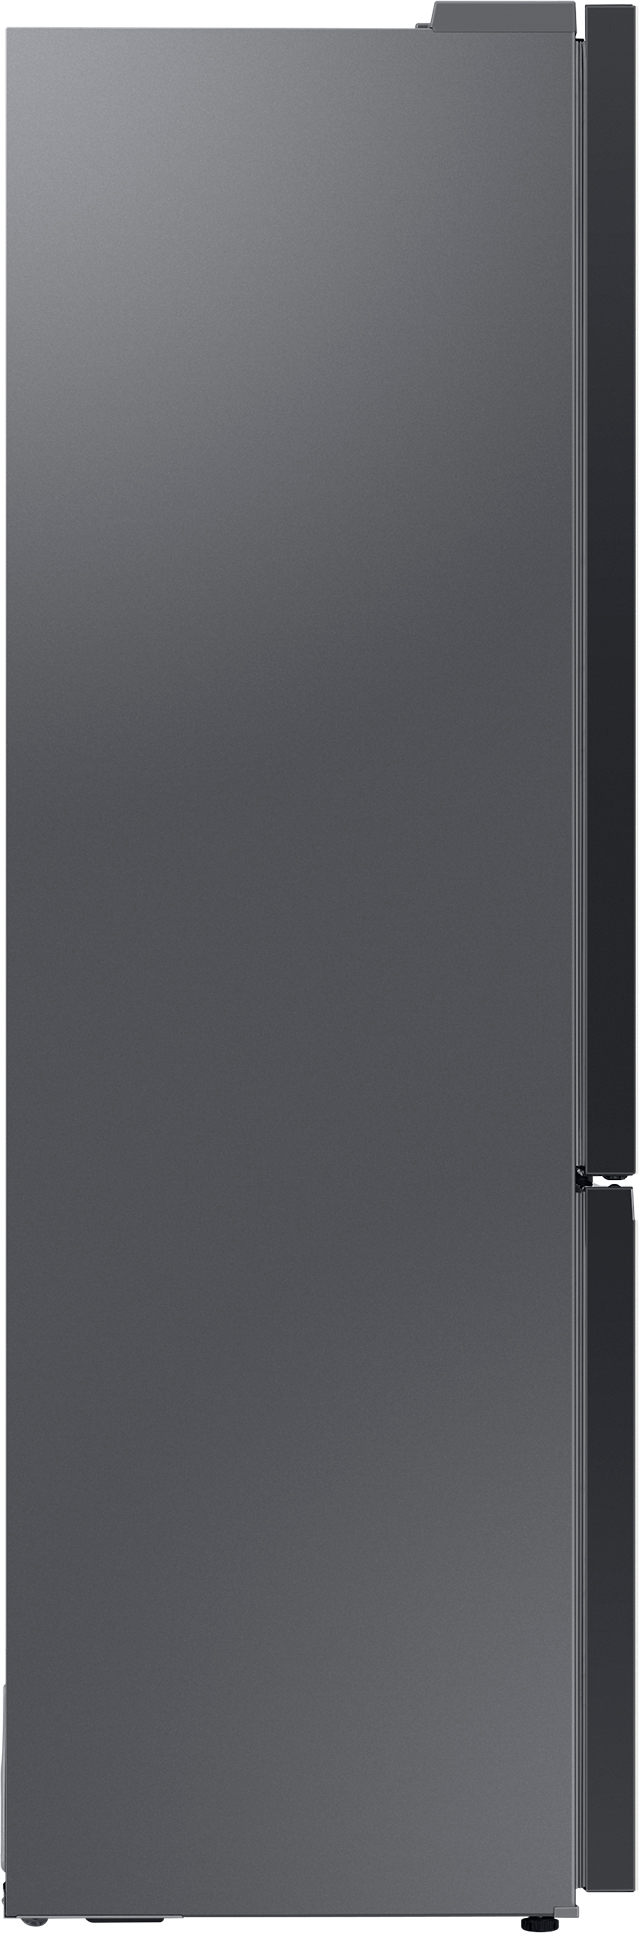 Холодильник Samsung RB38A6B62AP/UA обзор - фото 11